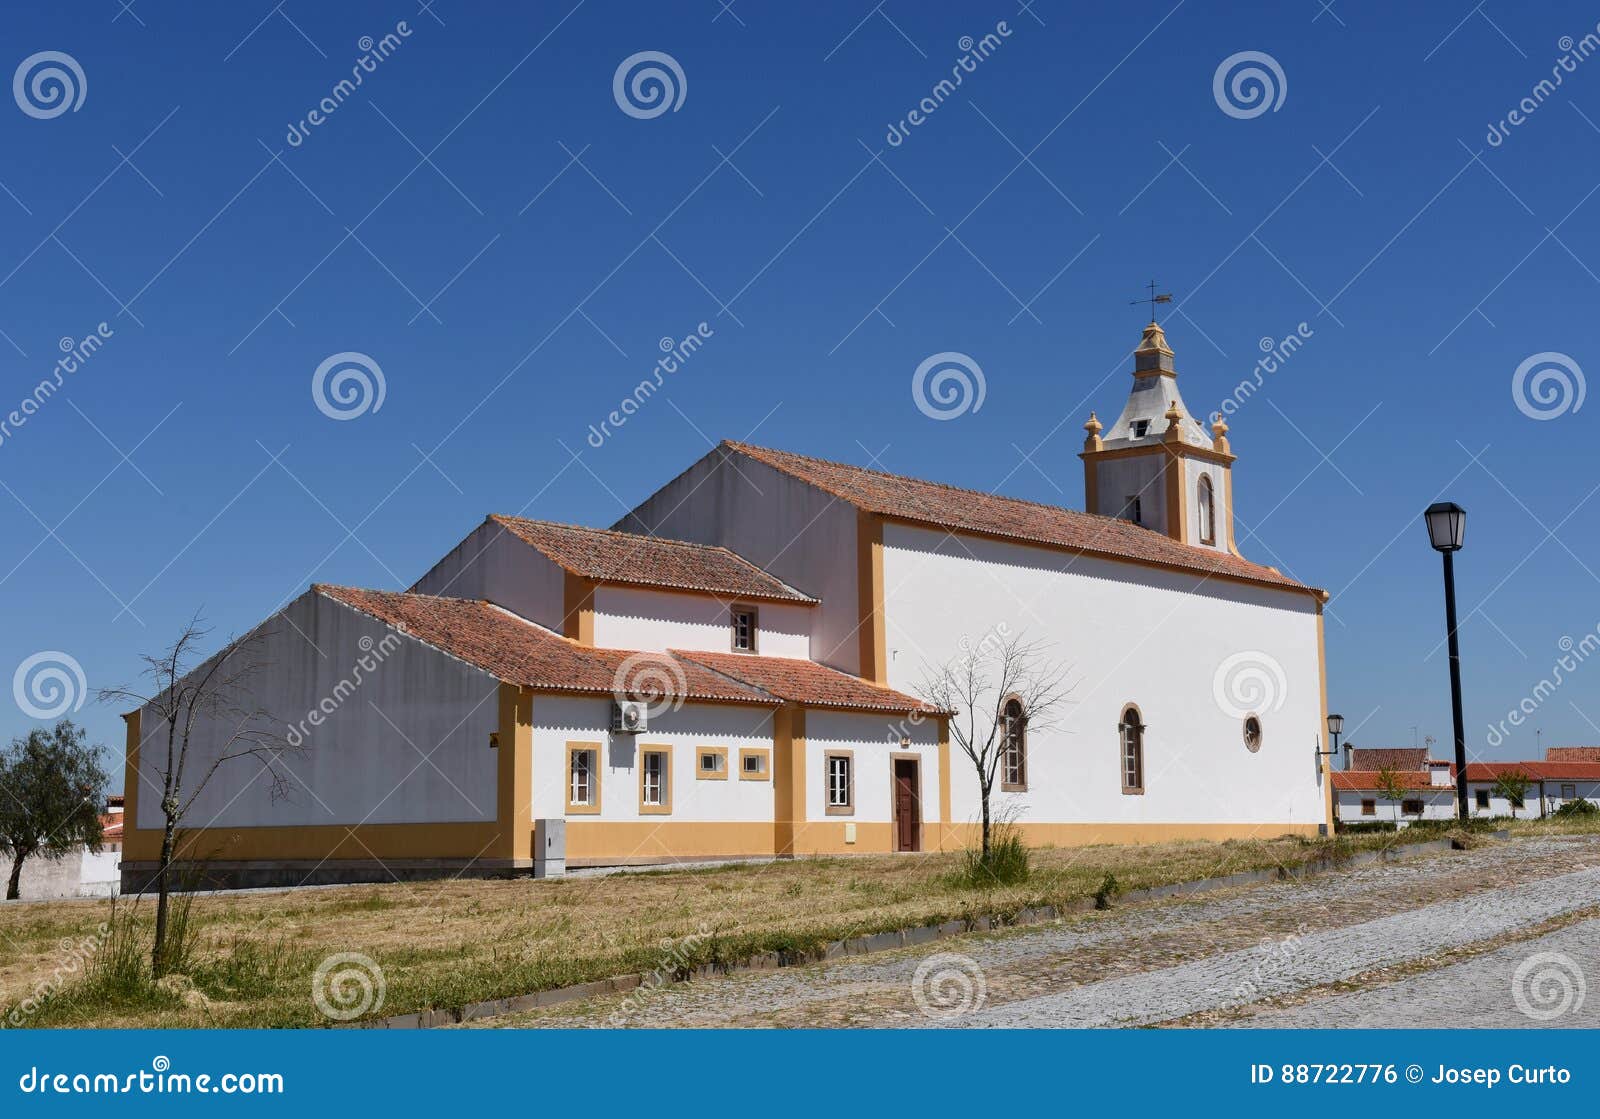 church of flor da rosa, alentejo region,